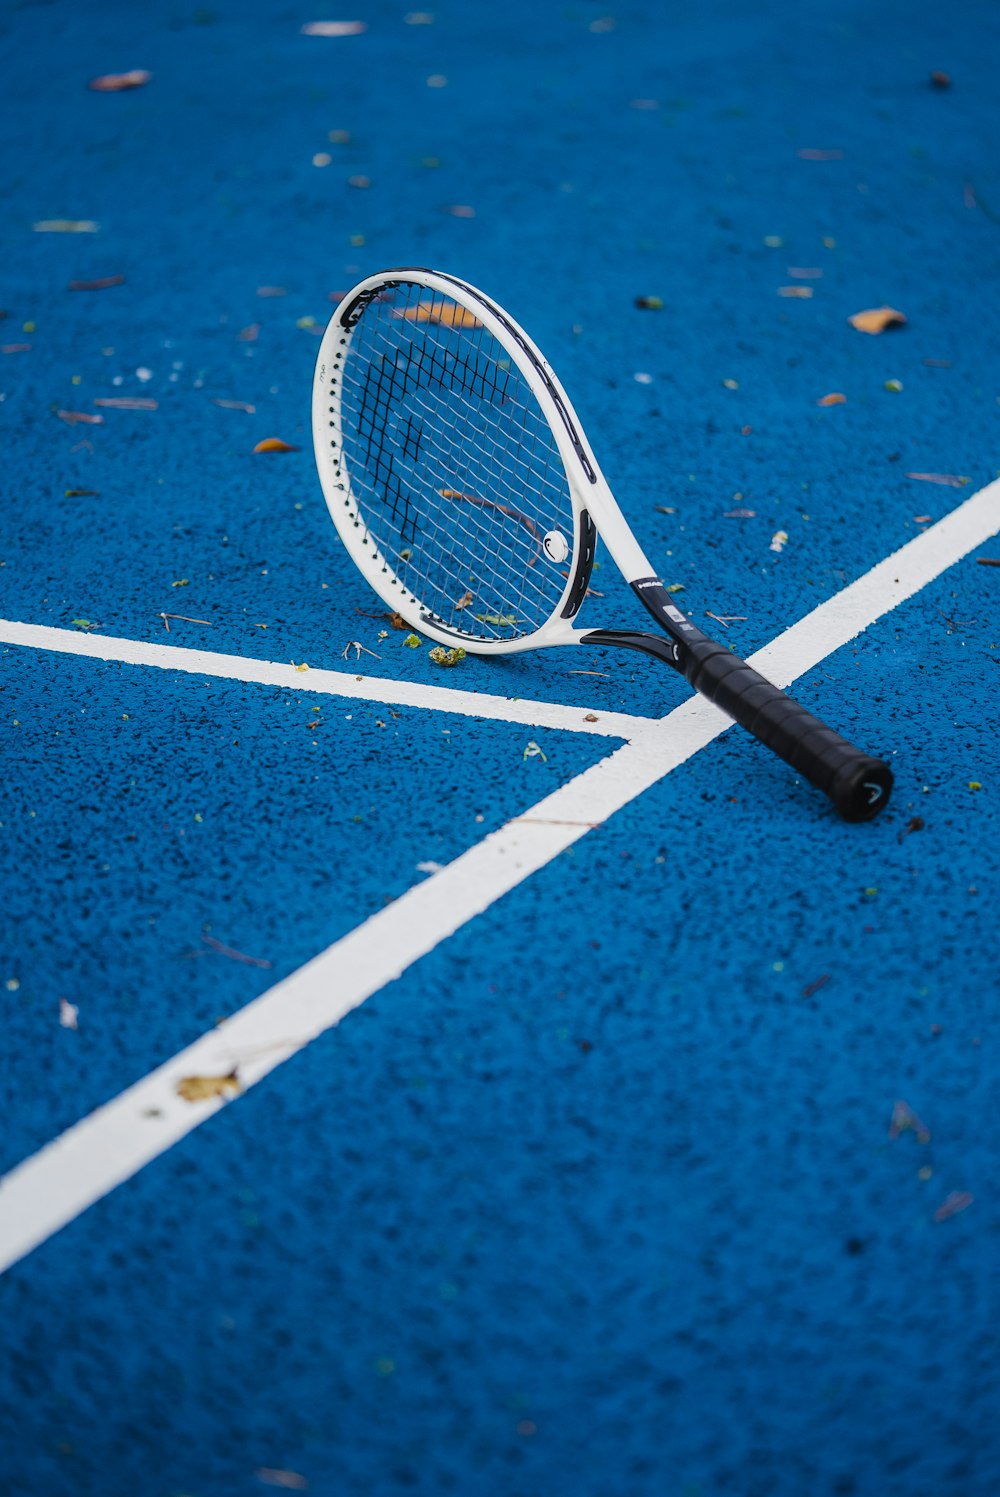 une raquette de tennis posée sur un court de tennis bleu